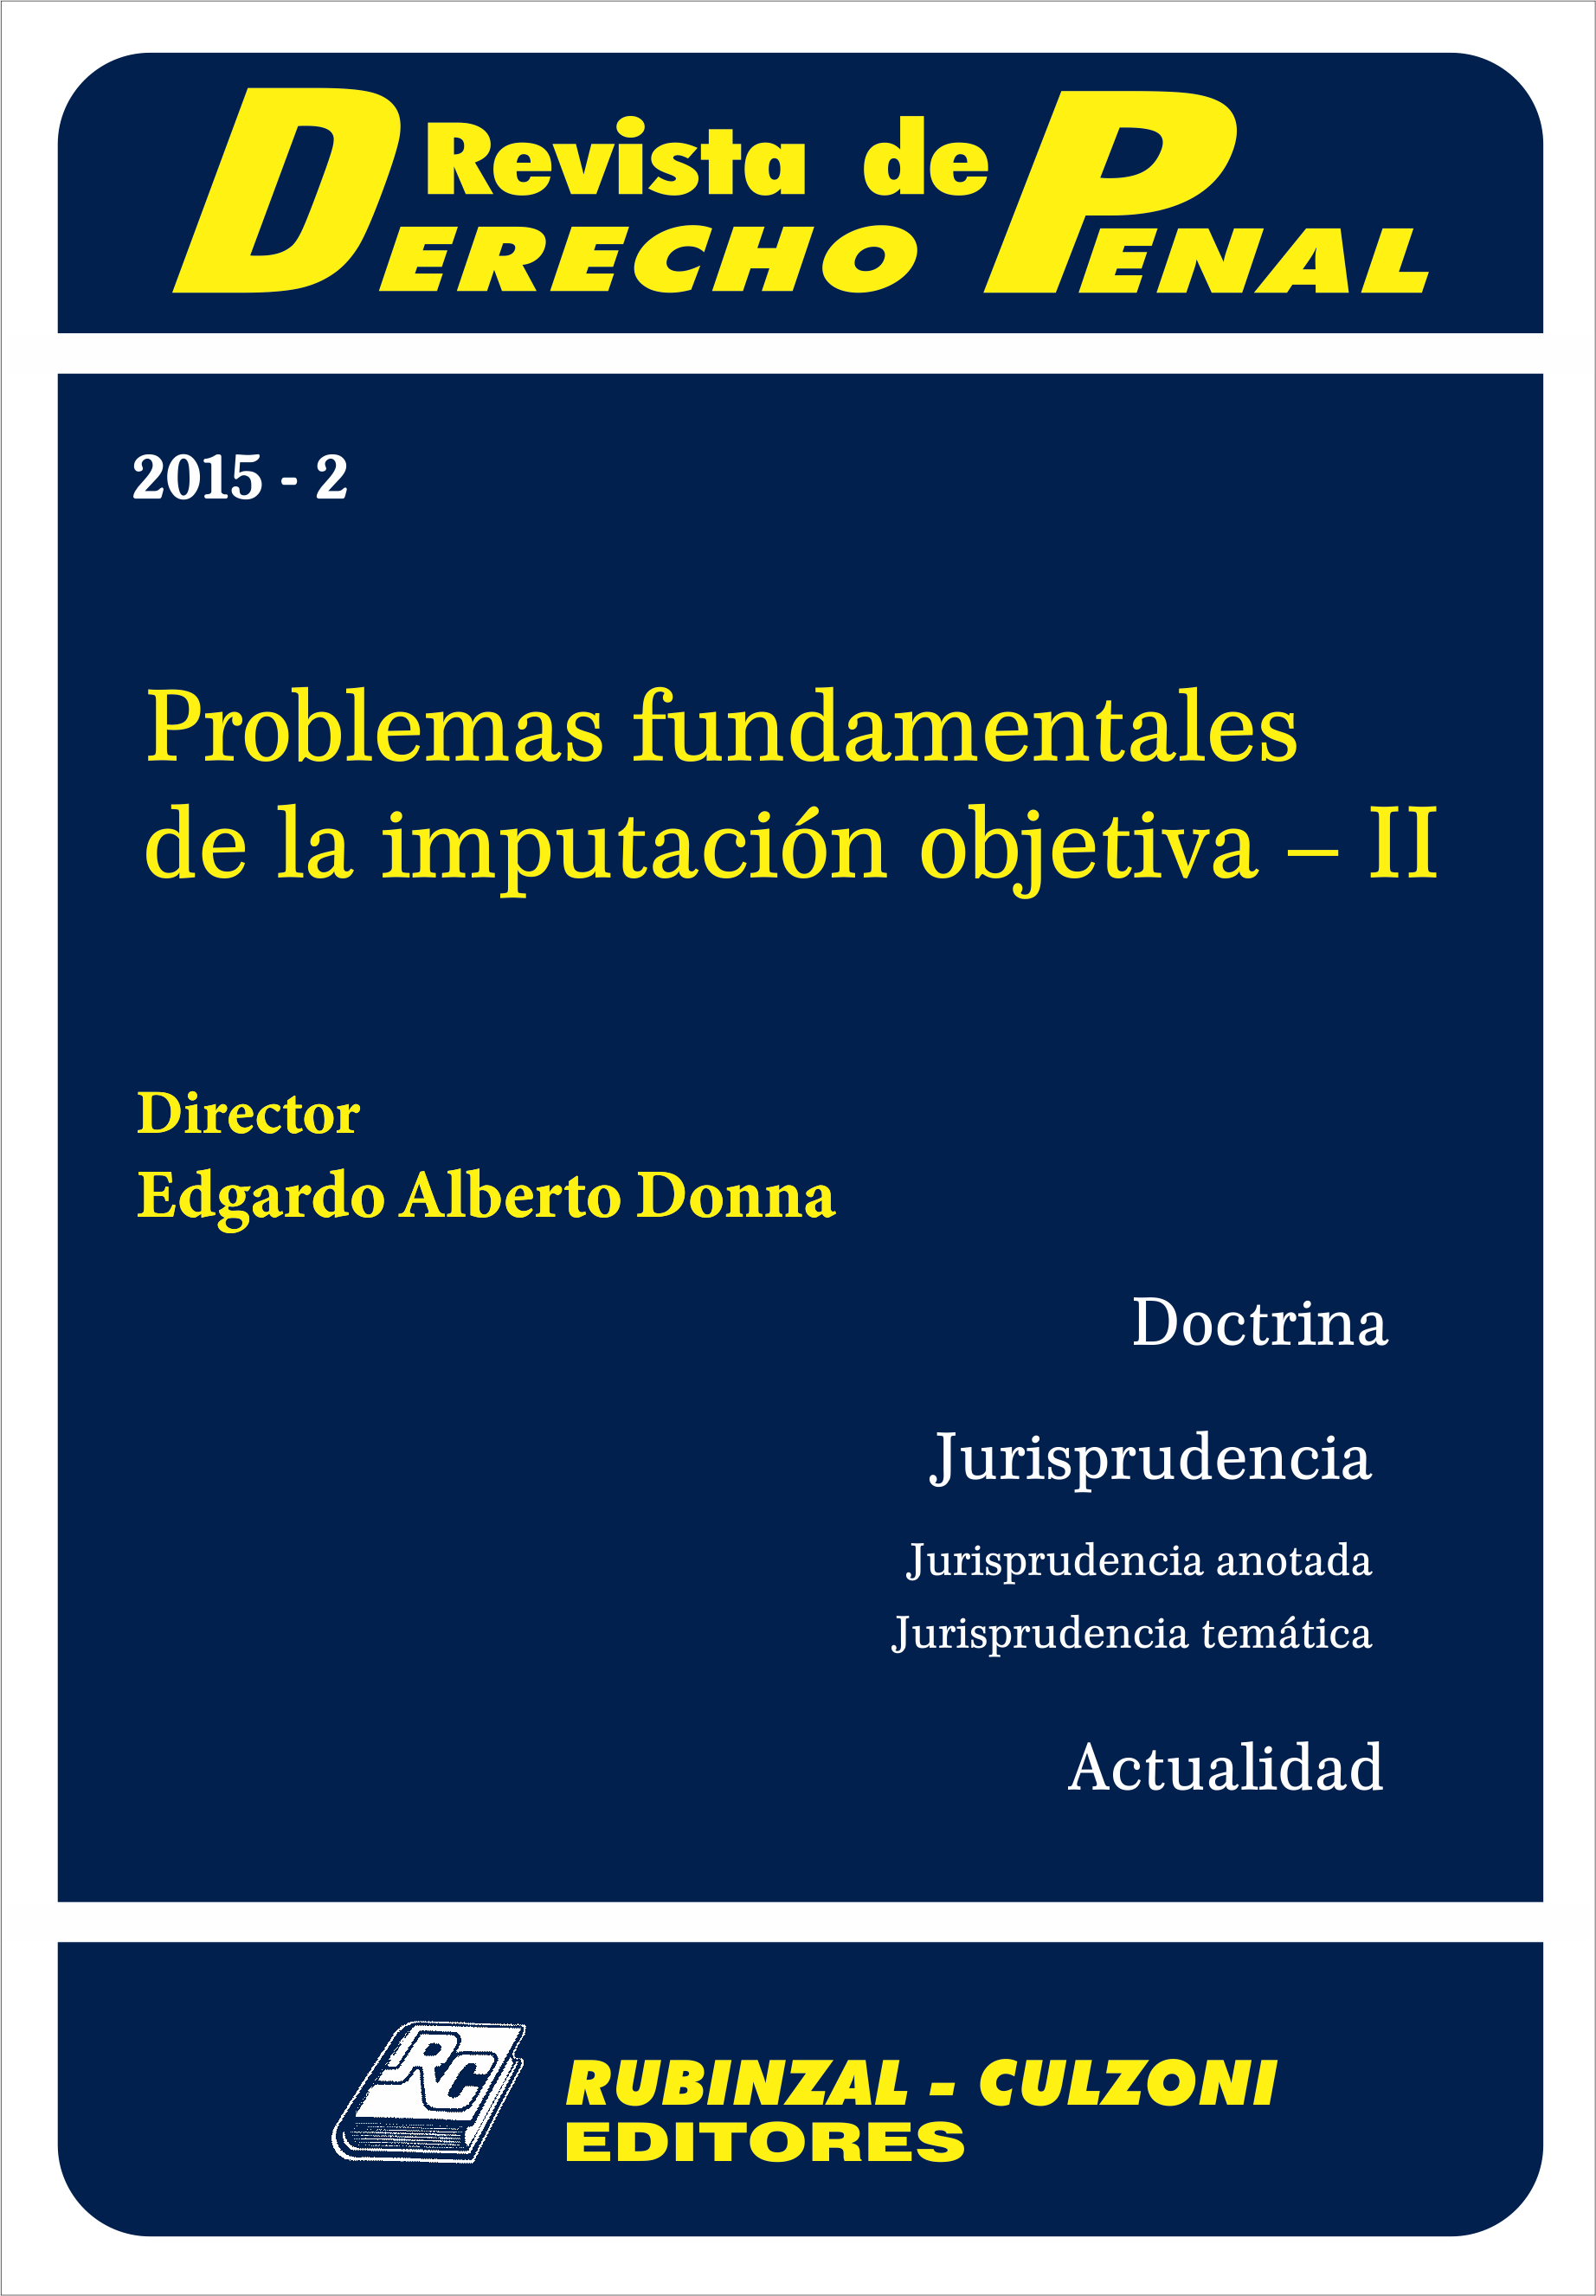 Revista de Derecho Penal - Problemas fundamentales de la imputación objetiva - II [2015-2]